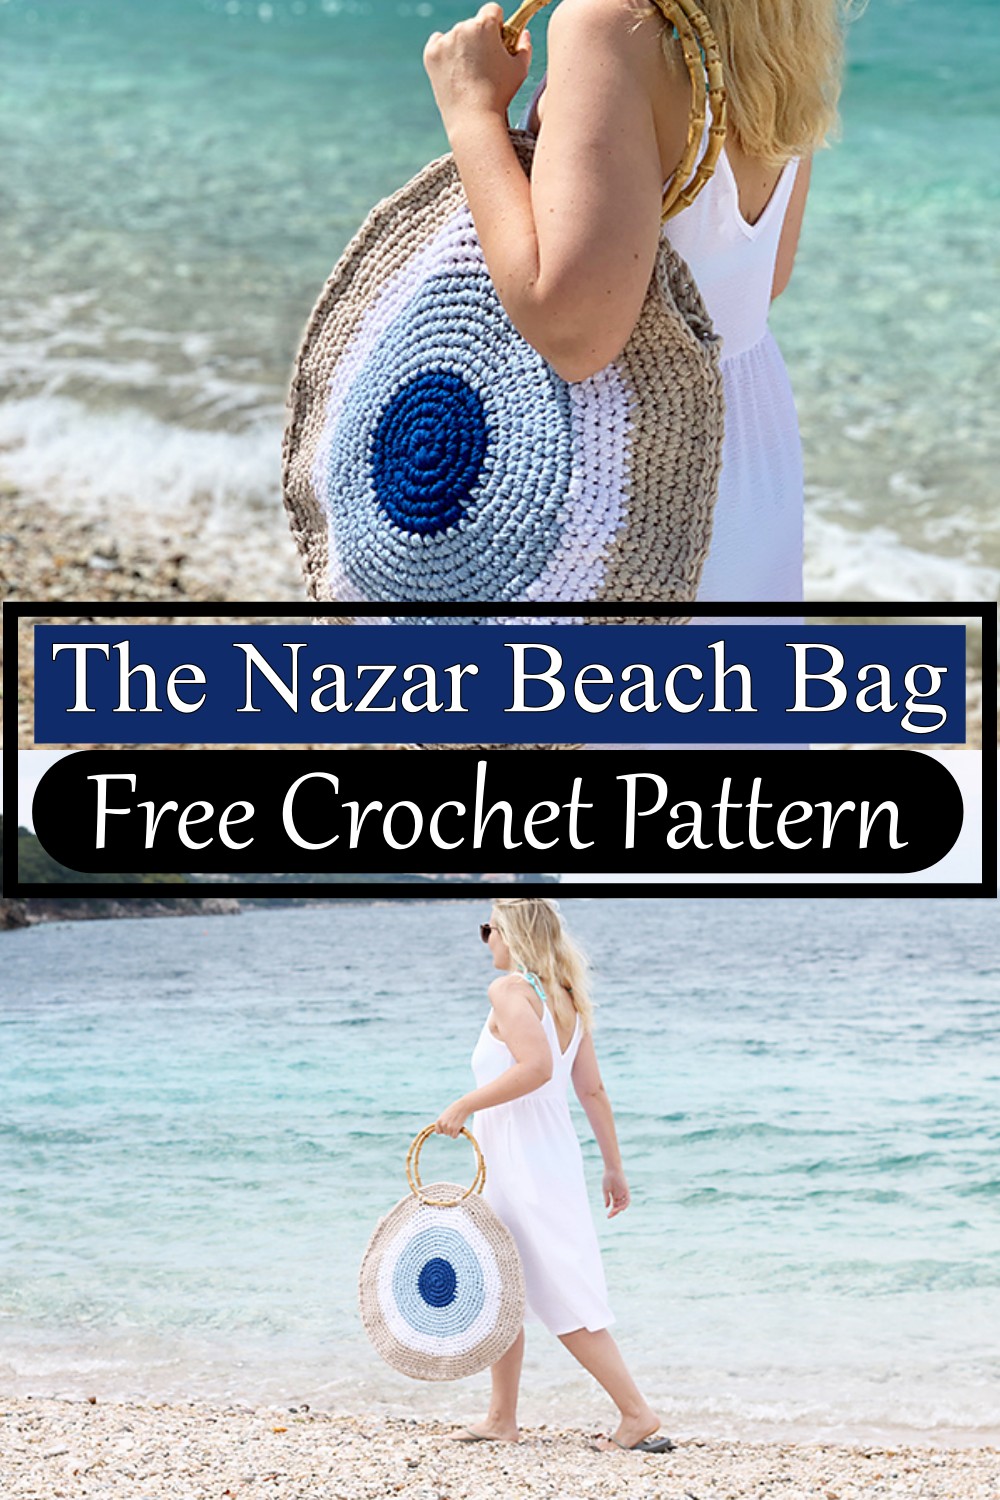 The Nazar Beach Bag